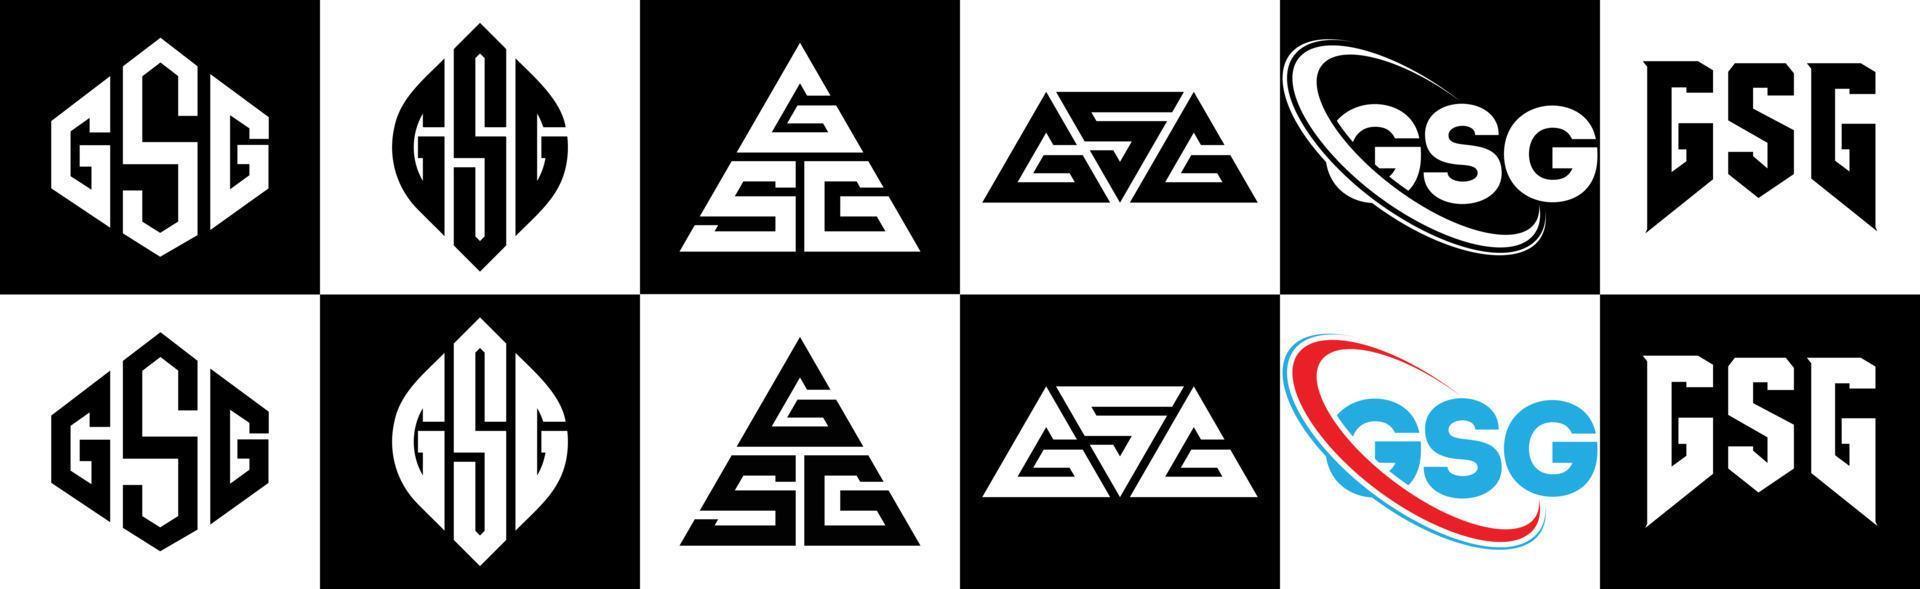 design de logotipo de carta gsg em seis estilos. gsg polígono, círculo, triângulo, hexágono, estilo plano e simples com logotipo de carta de variação de cor preto e branco definido em uma prancheta. gsg logotipo minimalista e clássico vetor